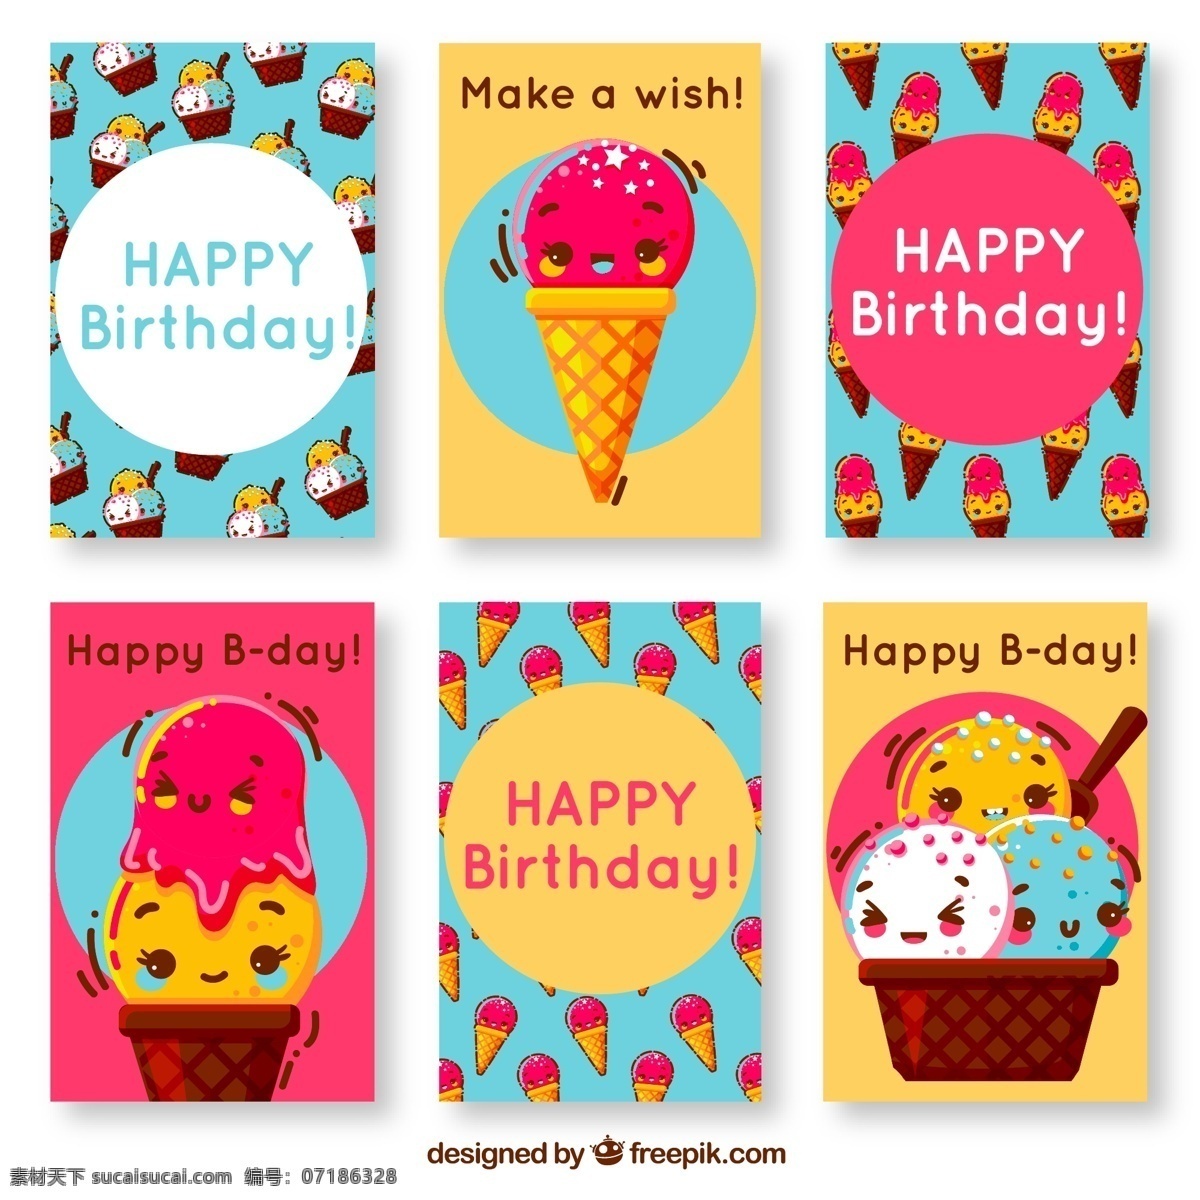 款 可爱 冰淇淋 生日 卡片 矢量 雪糕 甜筒 冰淇淋杯 happy birthday 贺卡 名片卡片